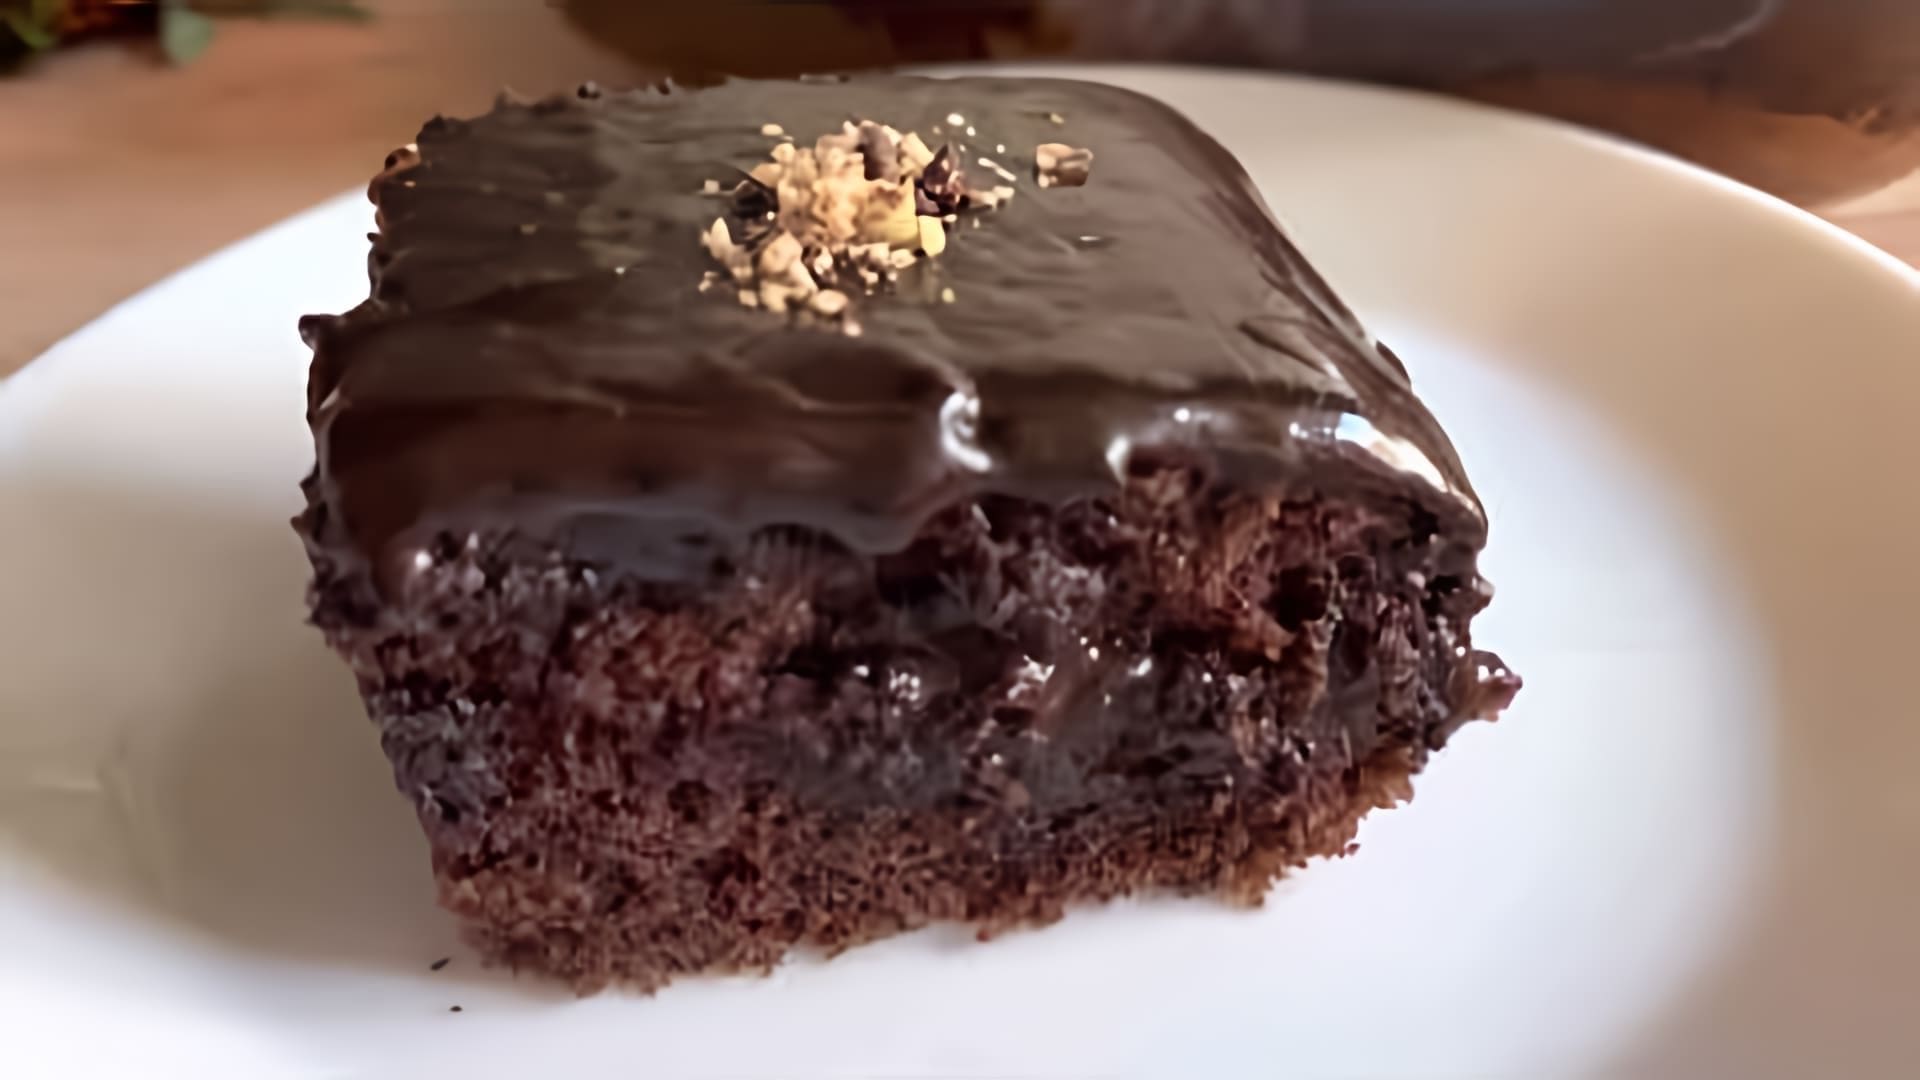 В этом видео демонстрируется рецепт турецкого шоколадного пирога, который готовится без использования весов и требует минимального количества ингредиентов